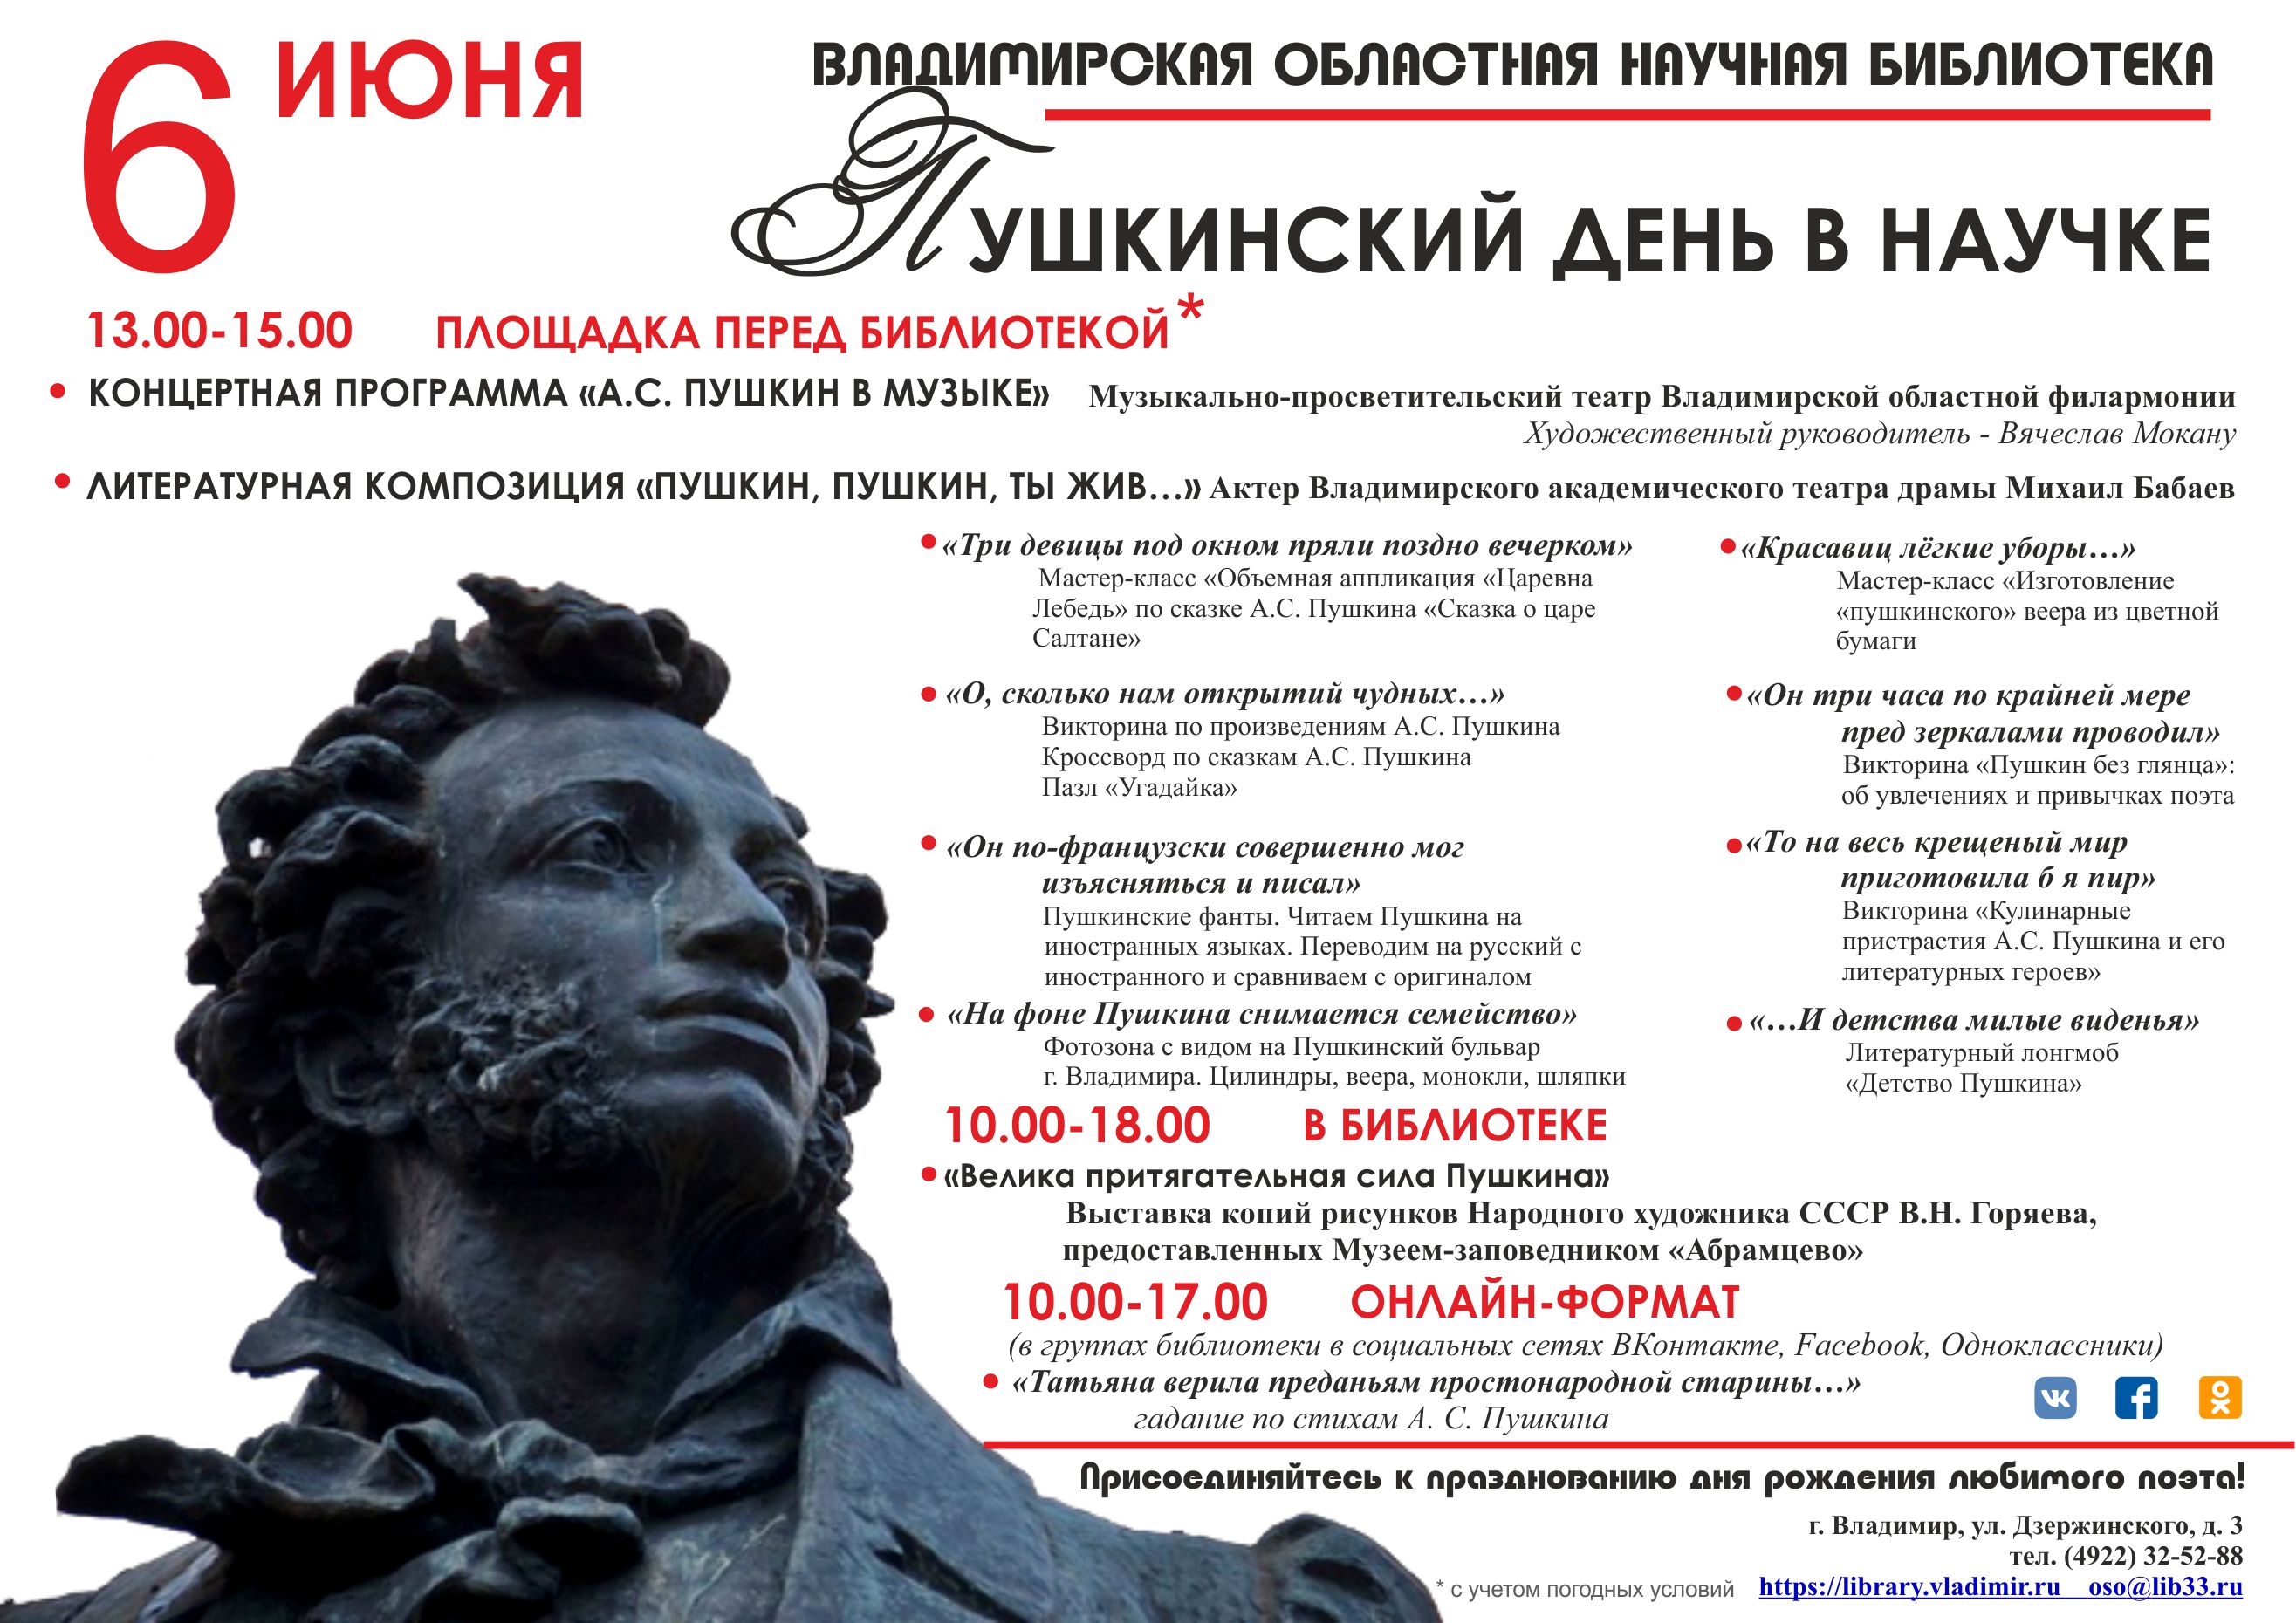 Почему важен пушкинский день в россии